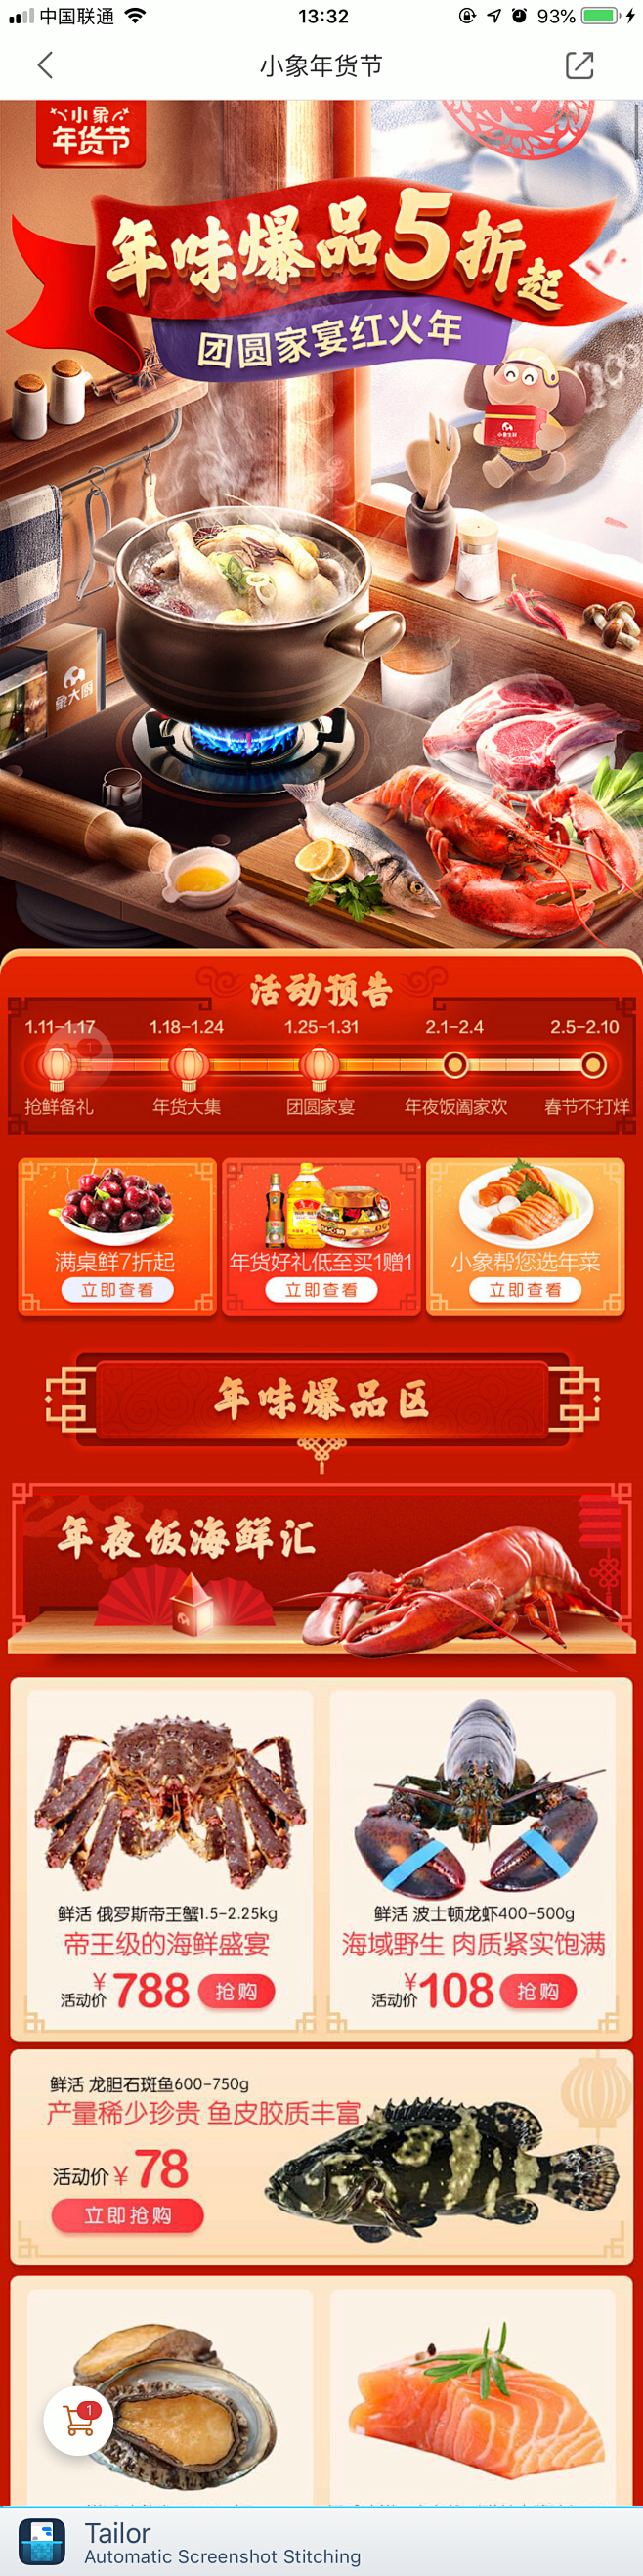 手机无线端食品店铺首页设计 小象年货节
...